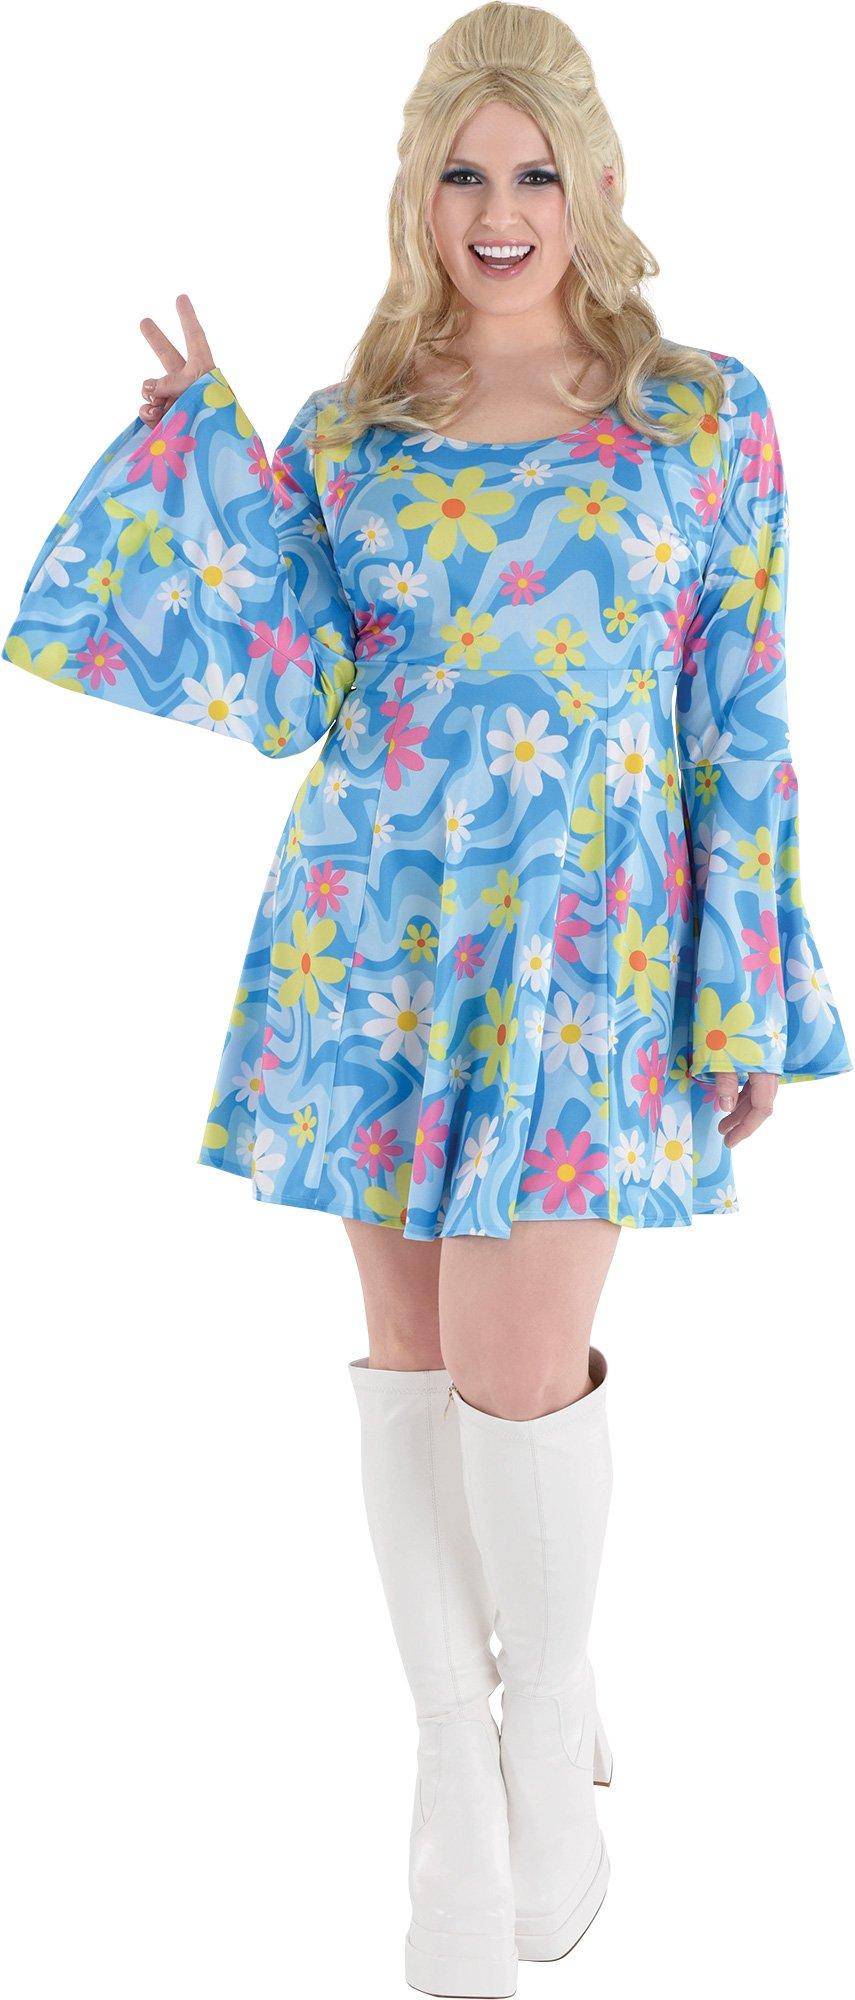 Adult 60s Flower Print Plus Size Mini Dress